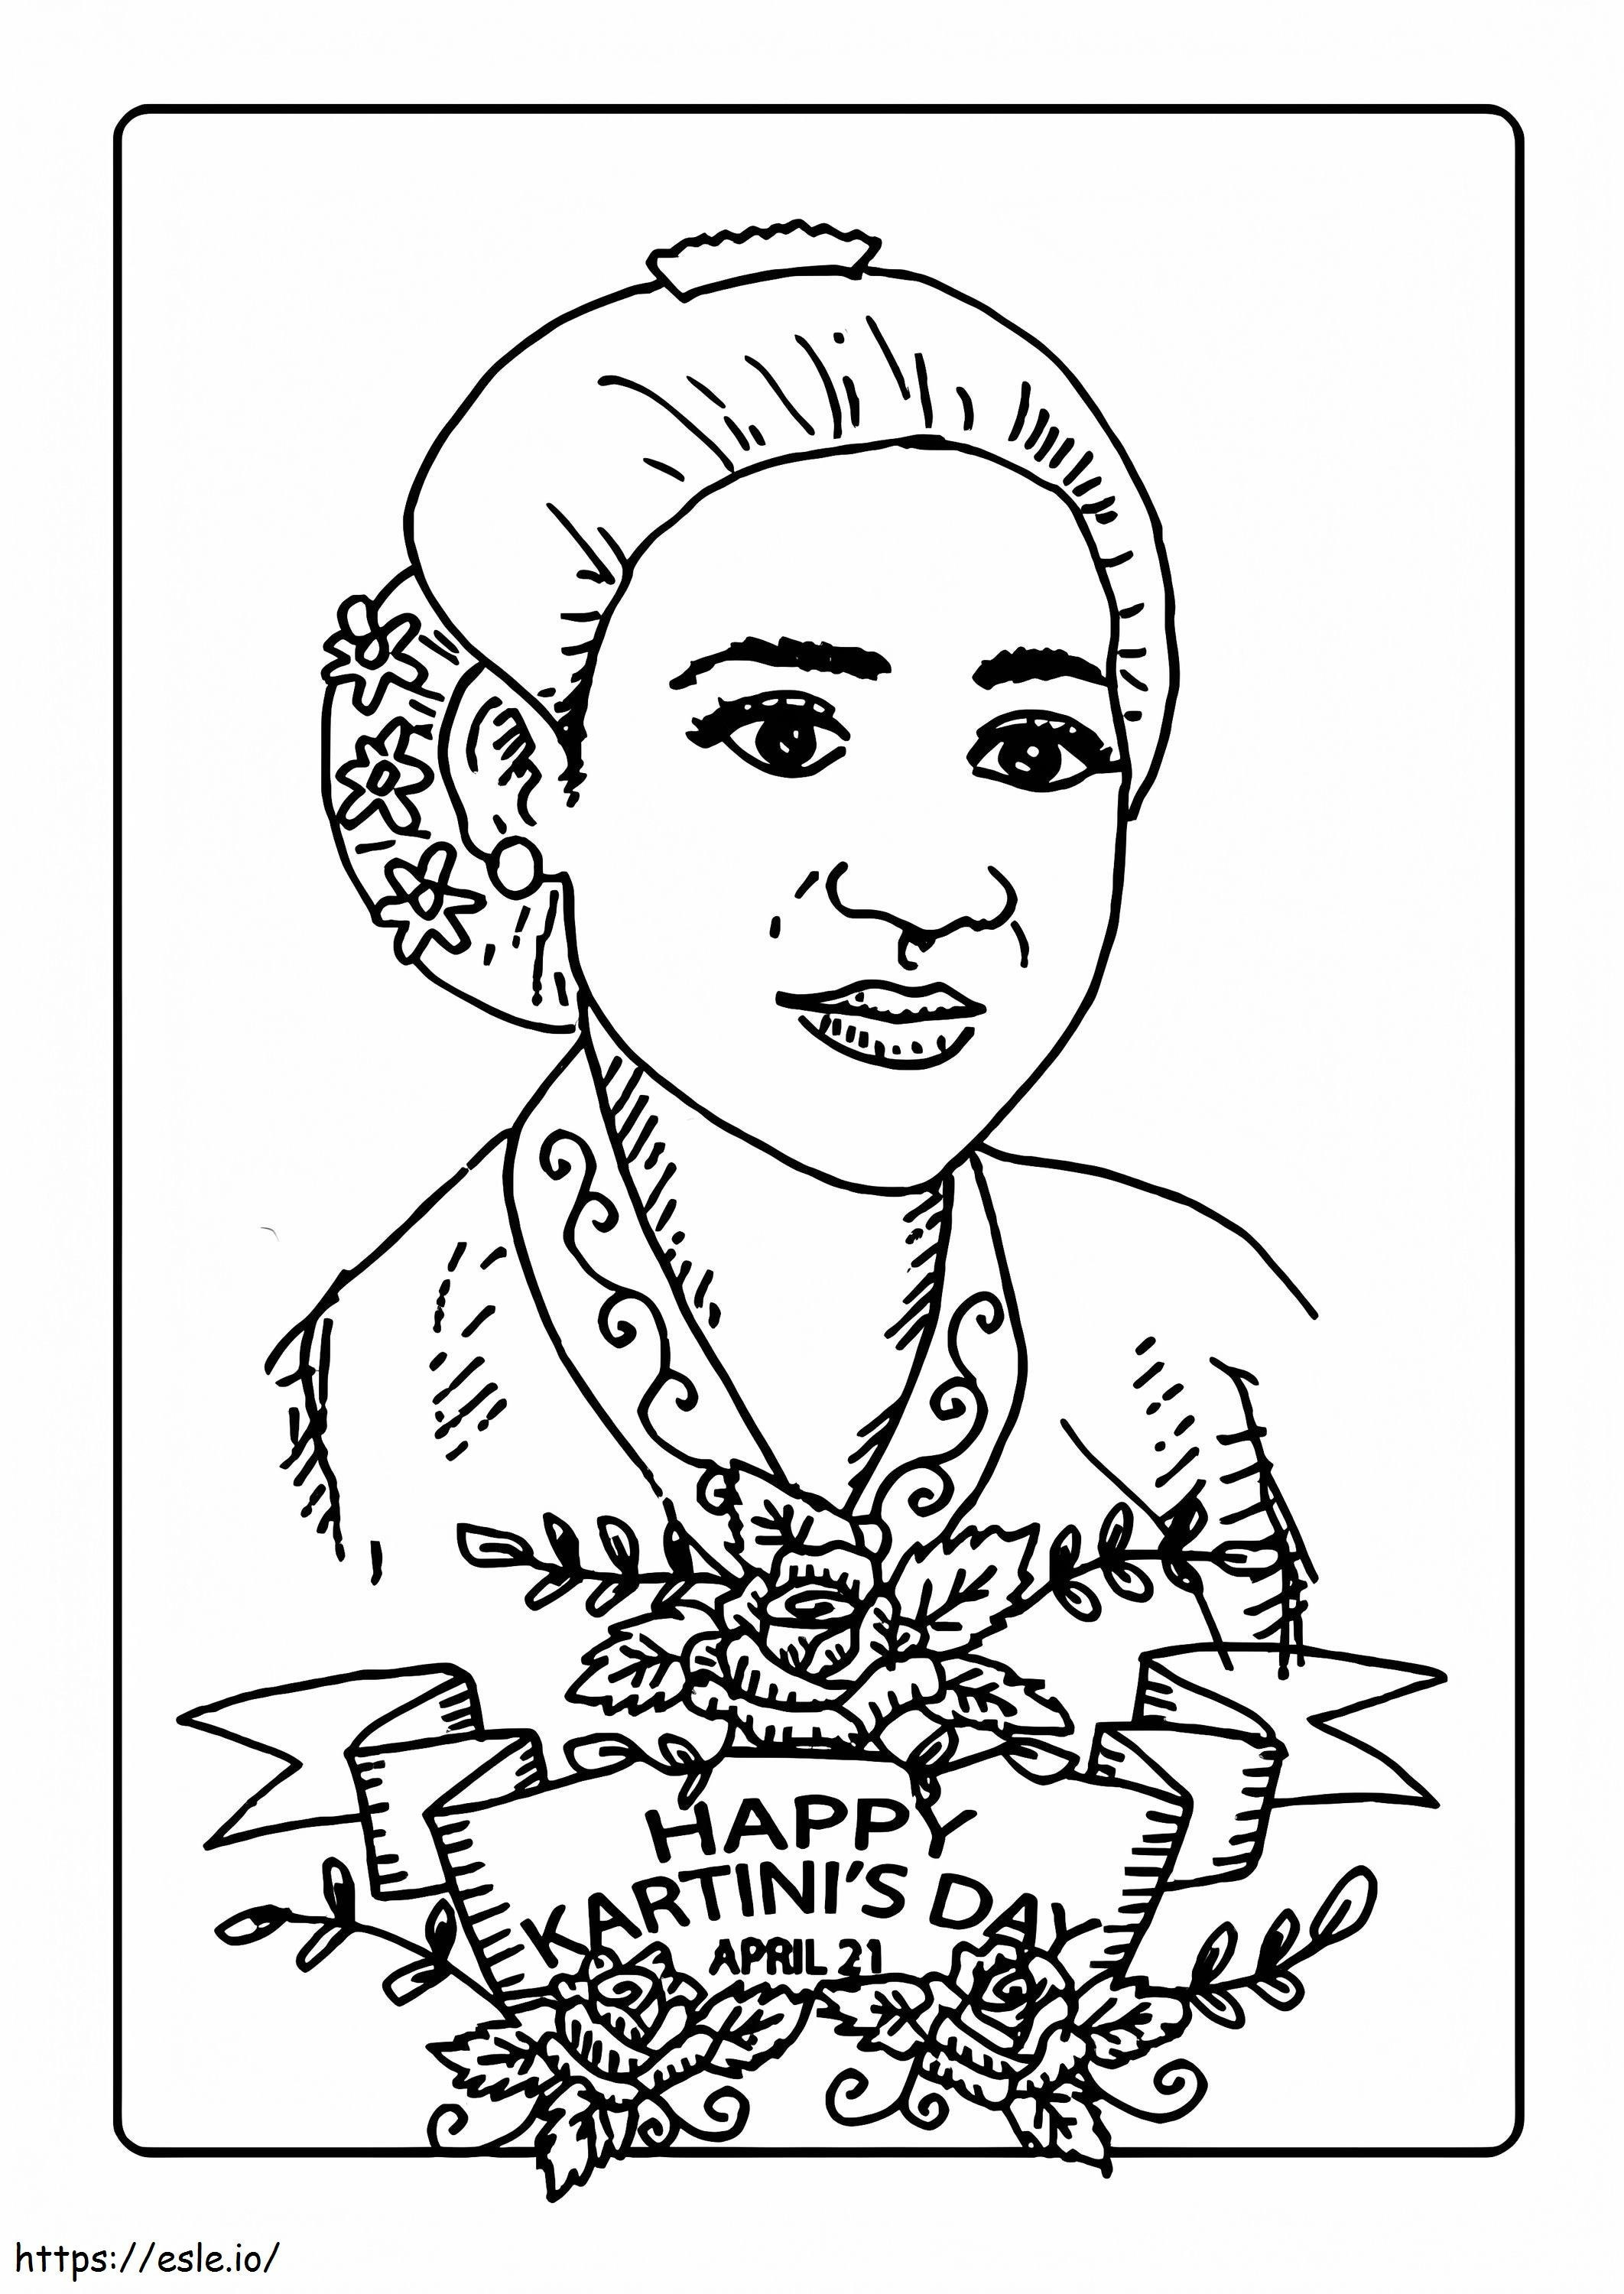 Szczęśliwego Dnia Kartini kolorowanka